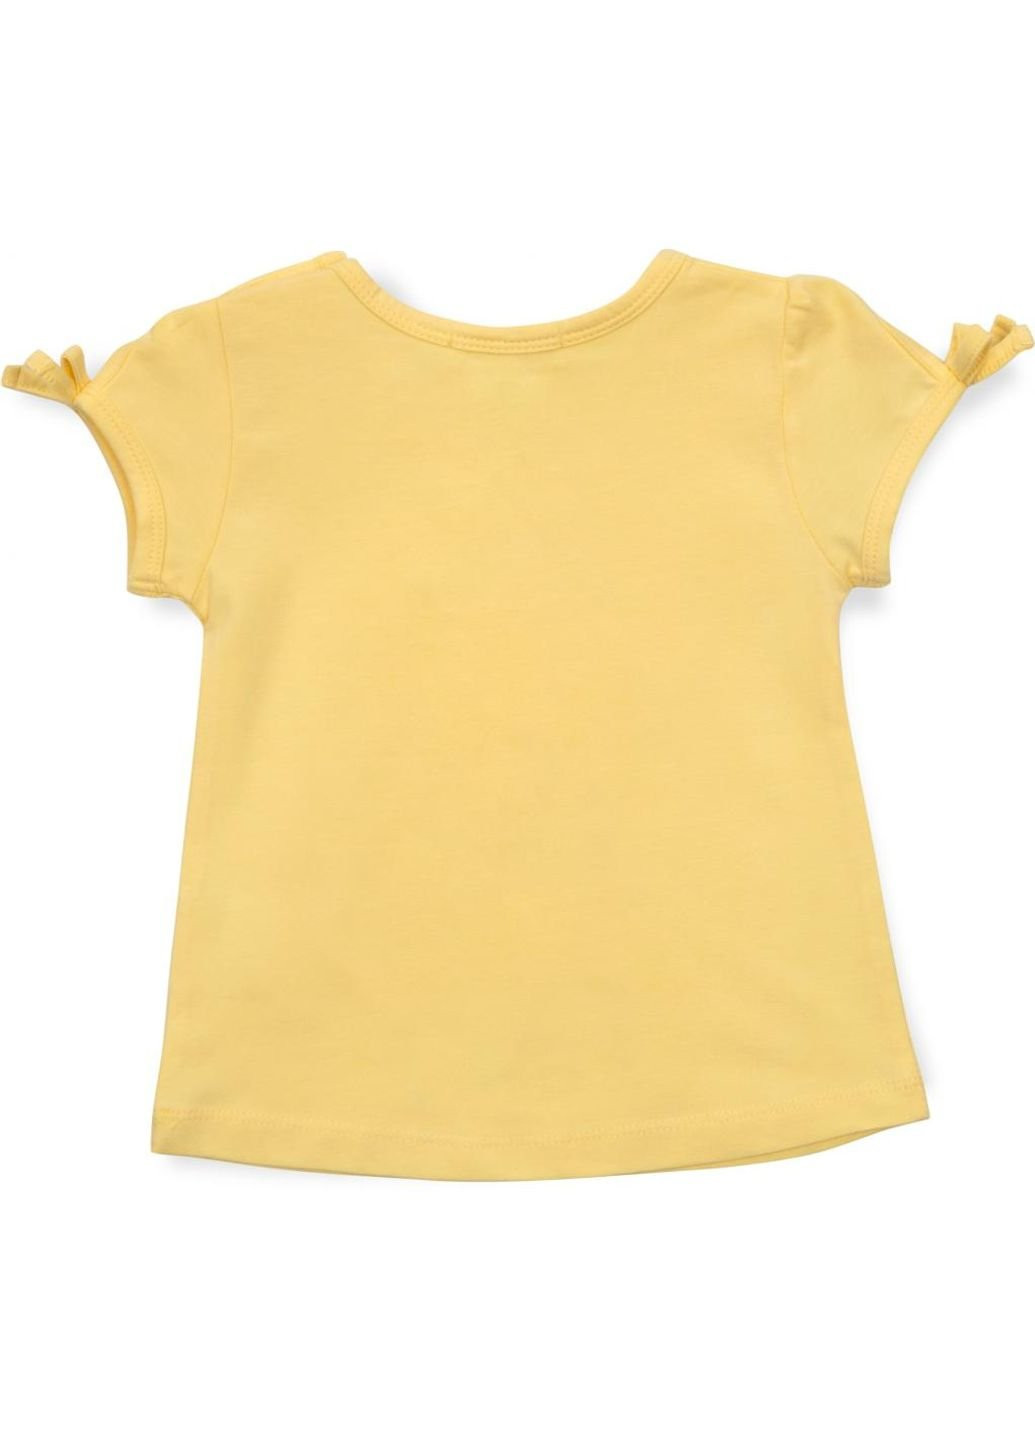 Комбинированная демисезонная футболка детская с фламинго (15702-104g-yellow) Breeze